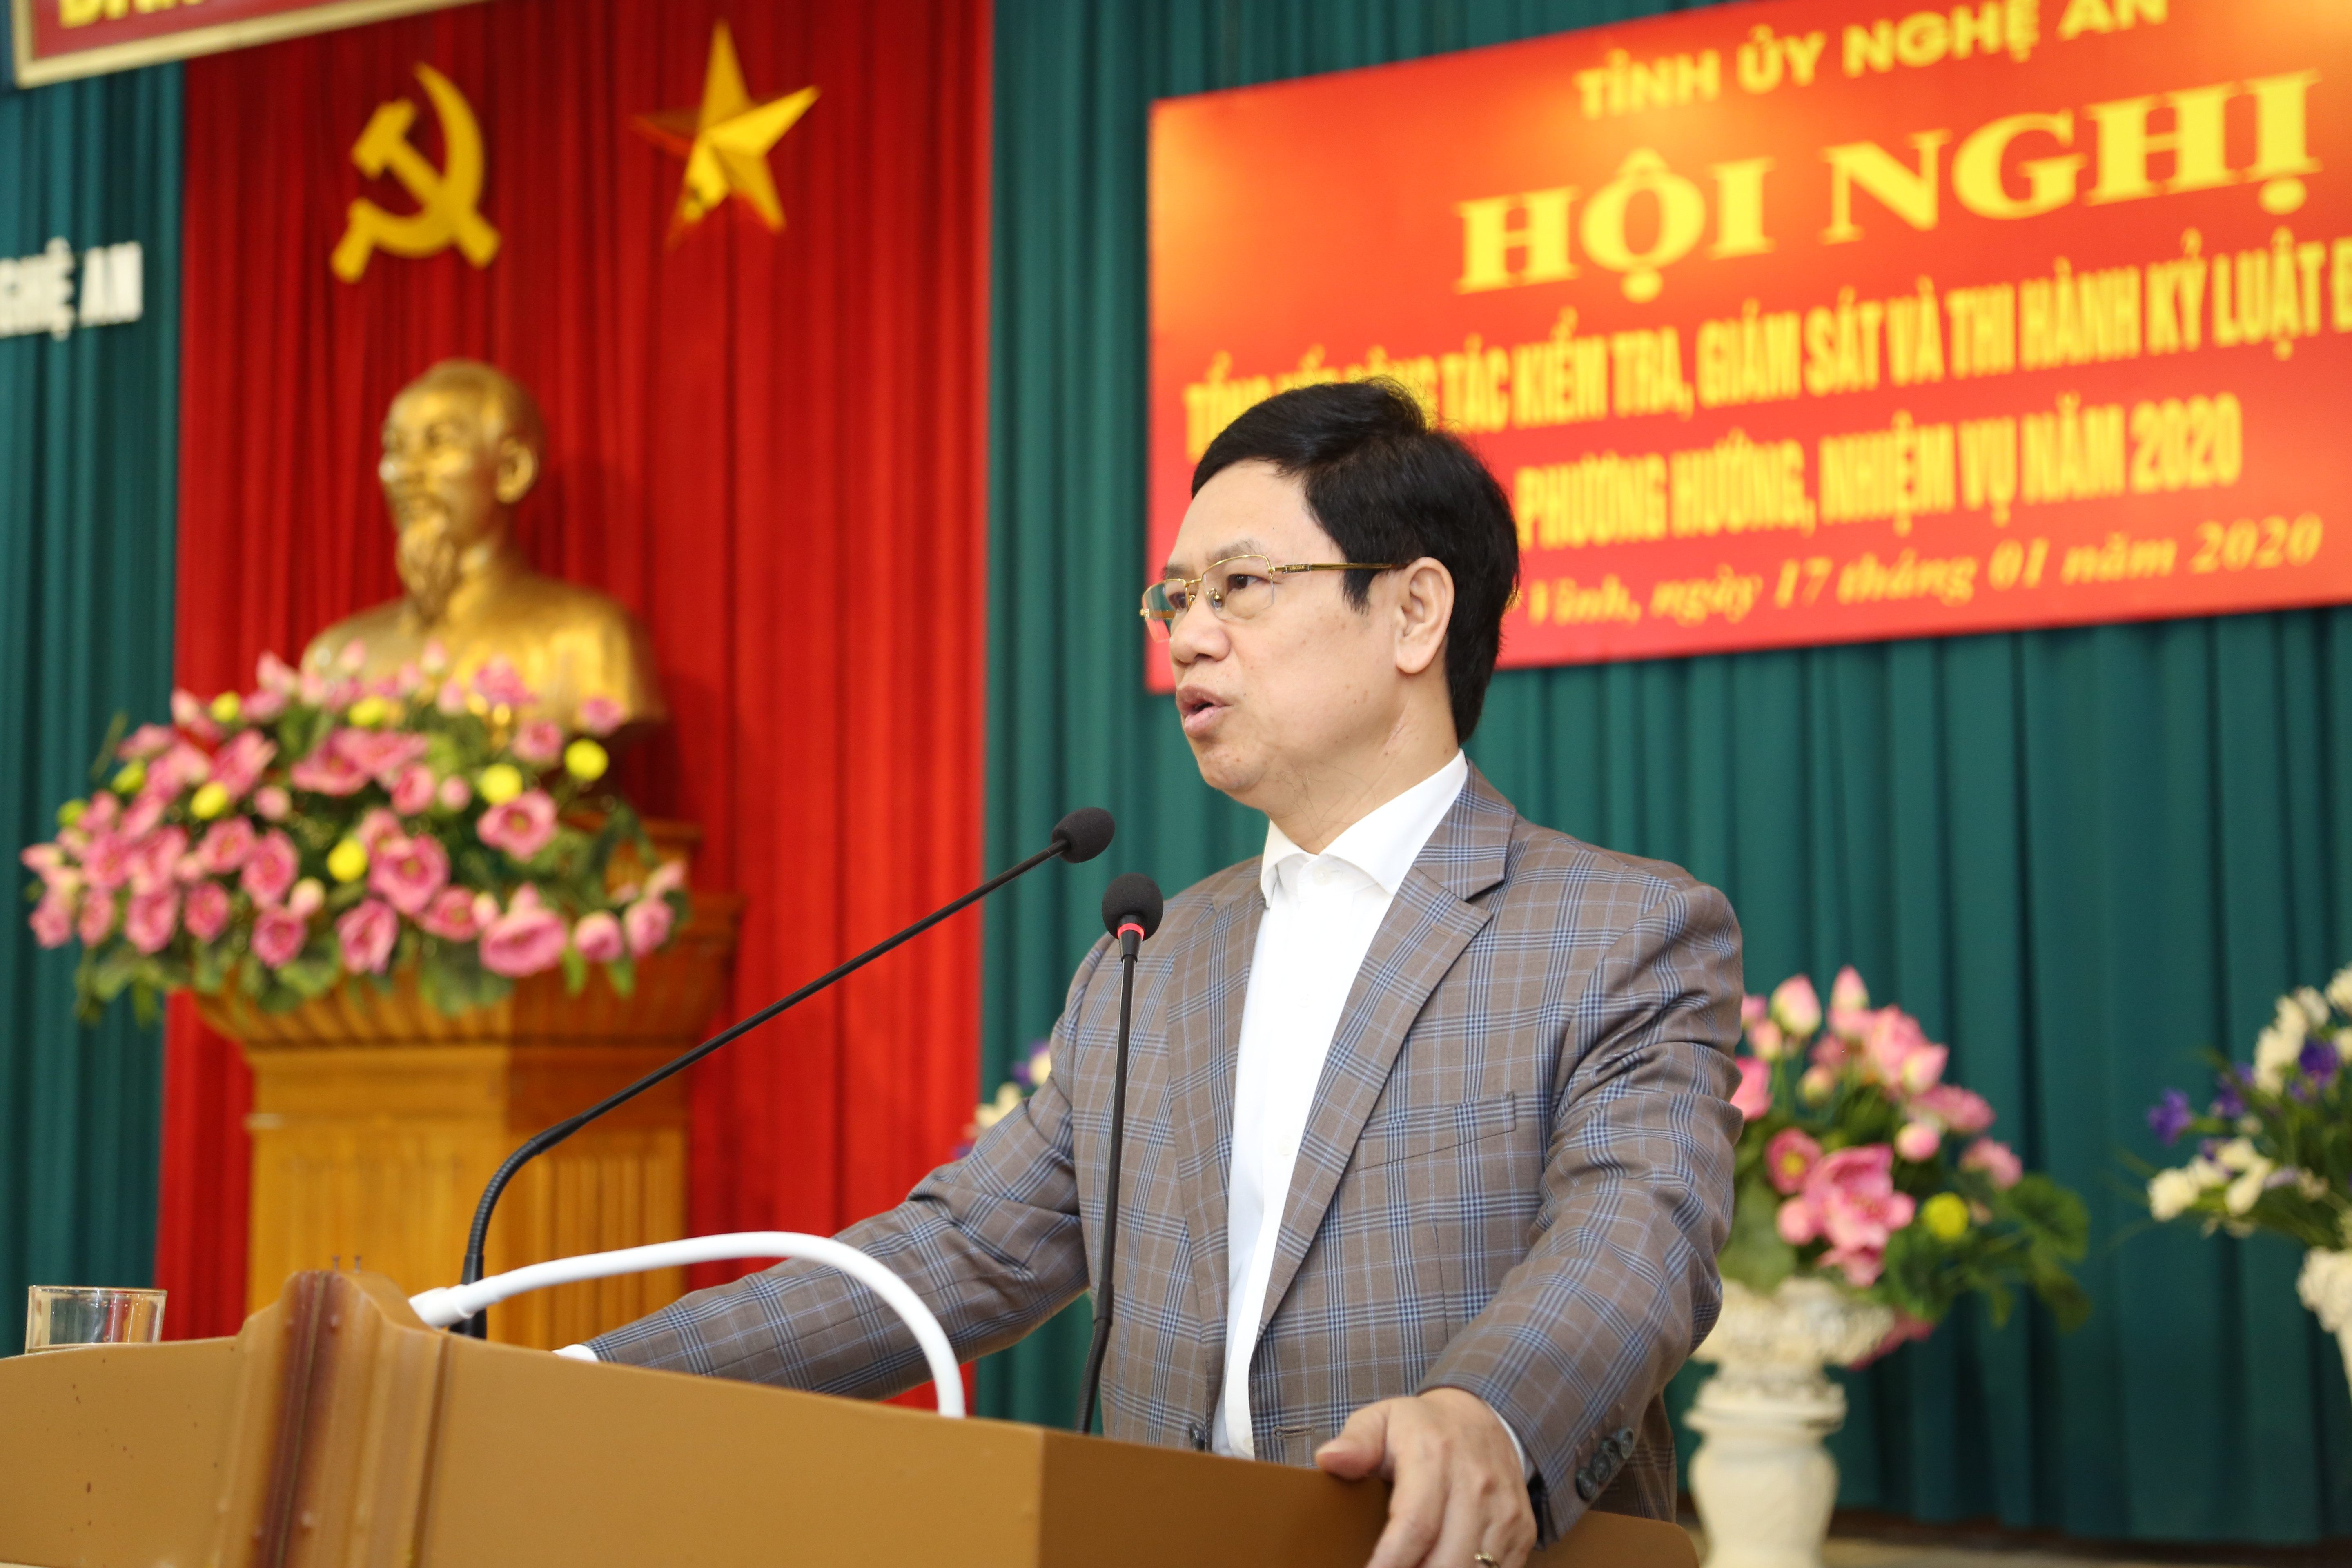 Phó Bí thư Thường trực Tỉnh ủy Nguyễn Xuân Sơn cho rằng công tác kiểm tra cần tiến hành thường xuyên nhằm tránh cán bộ vi phạm